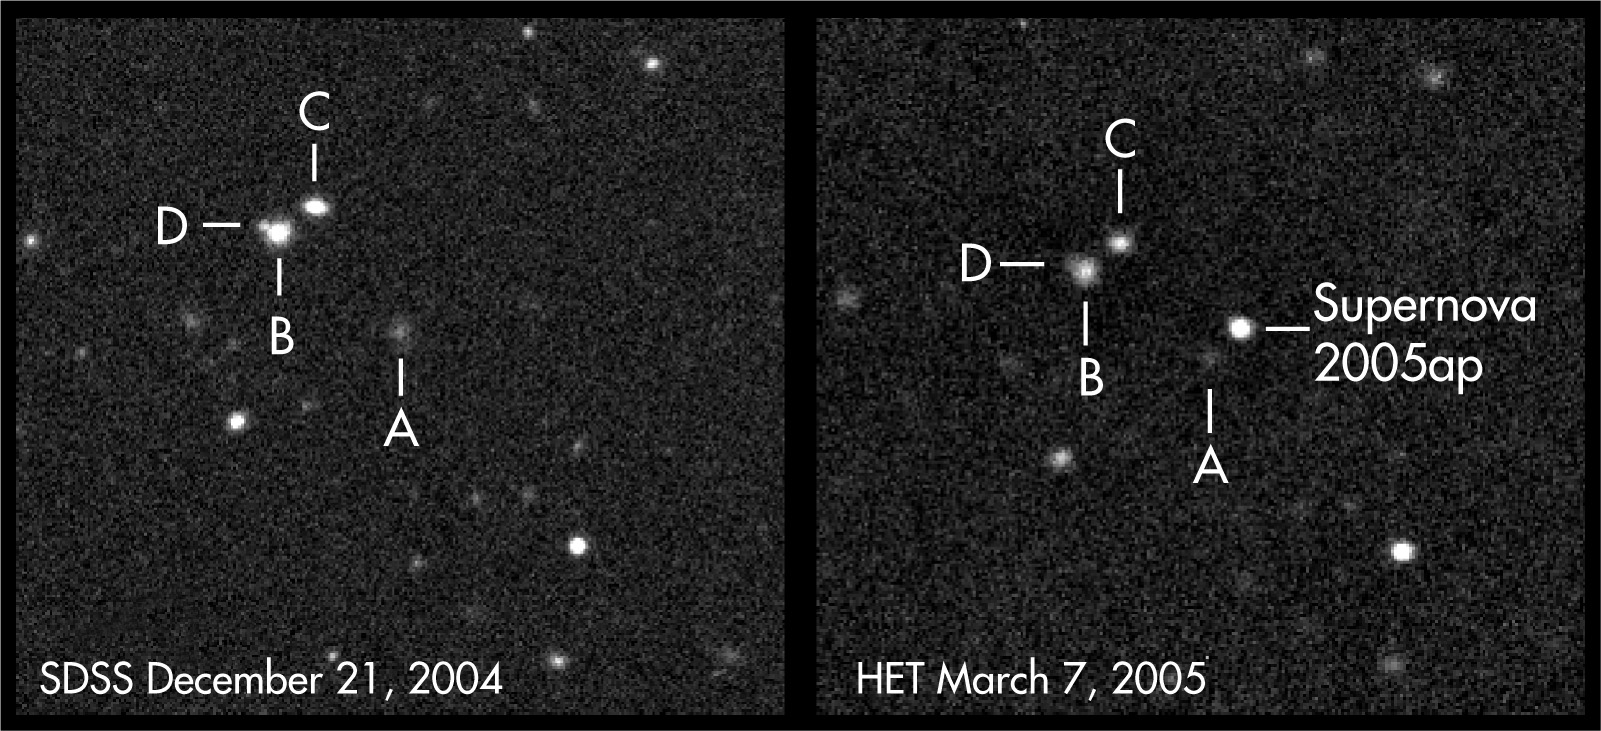 SN 2005ap, la plus brillante supernova observée à ce jour